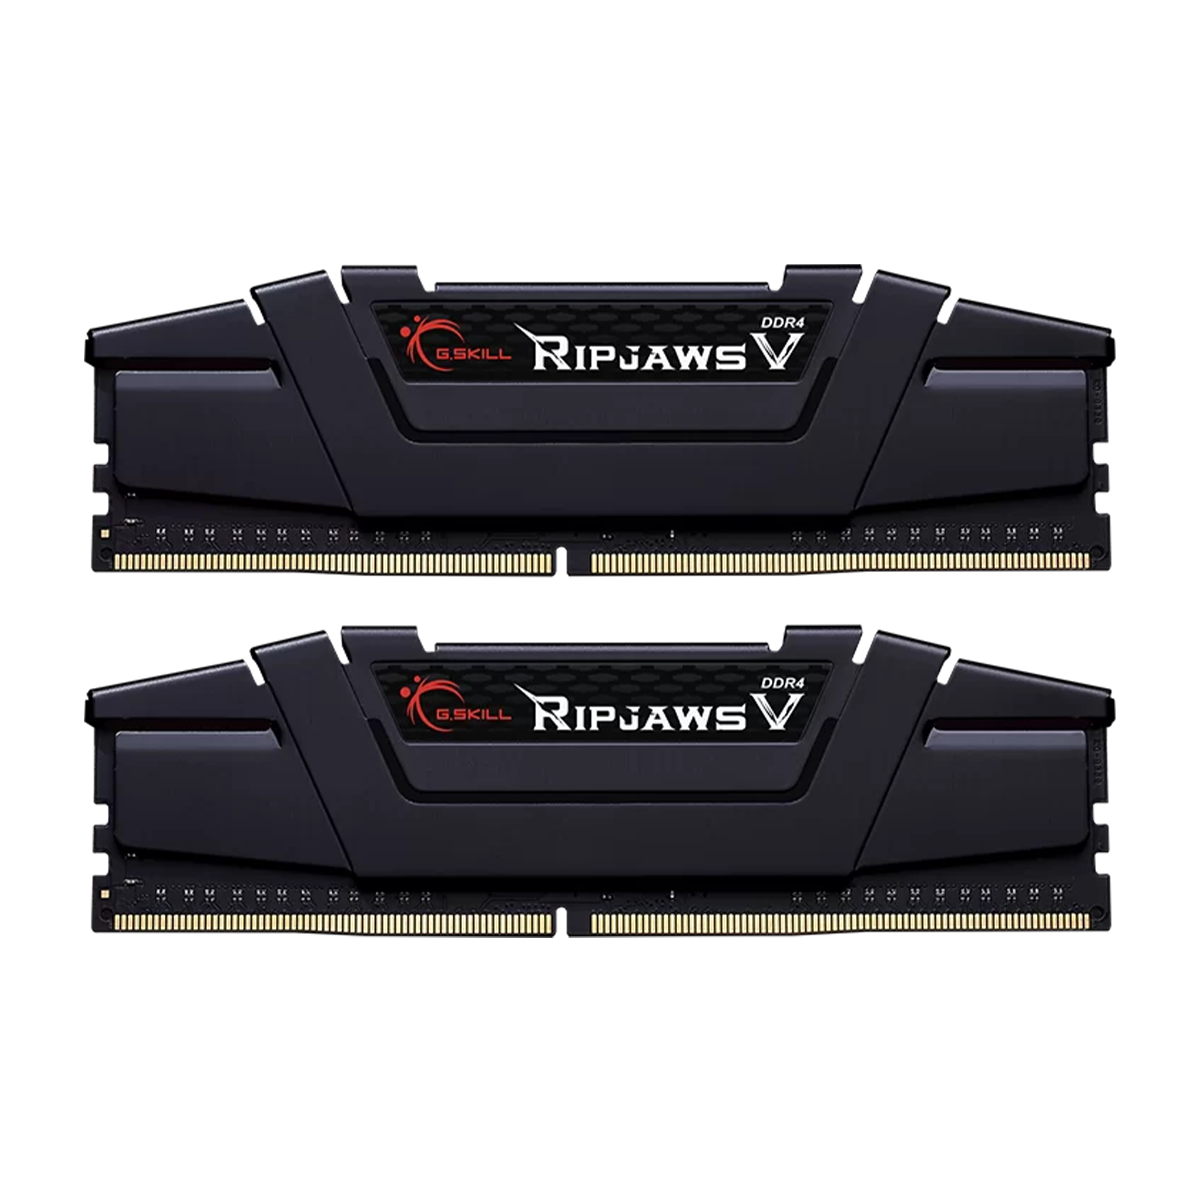 رم کامپیوتر DDR4 دو کاناله 4000 مگاهرتز CL18 جی اسکیل مدل Ripjaws V ظرفیت 16 گیگابایت